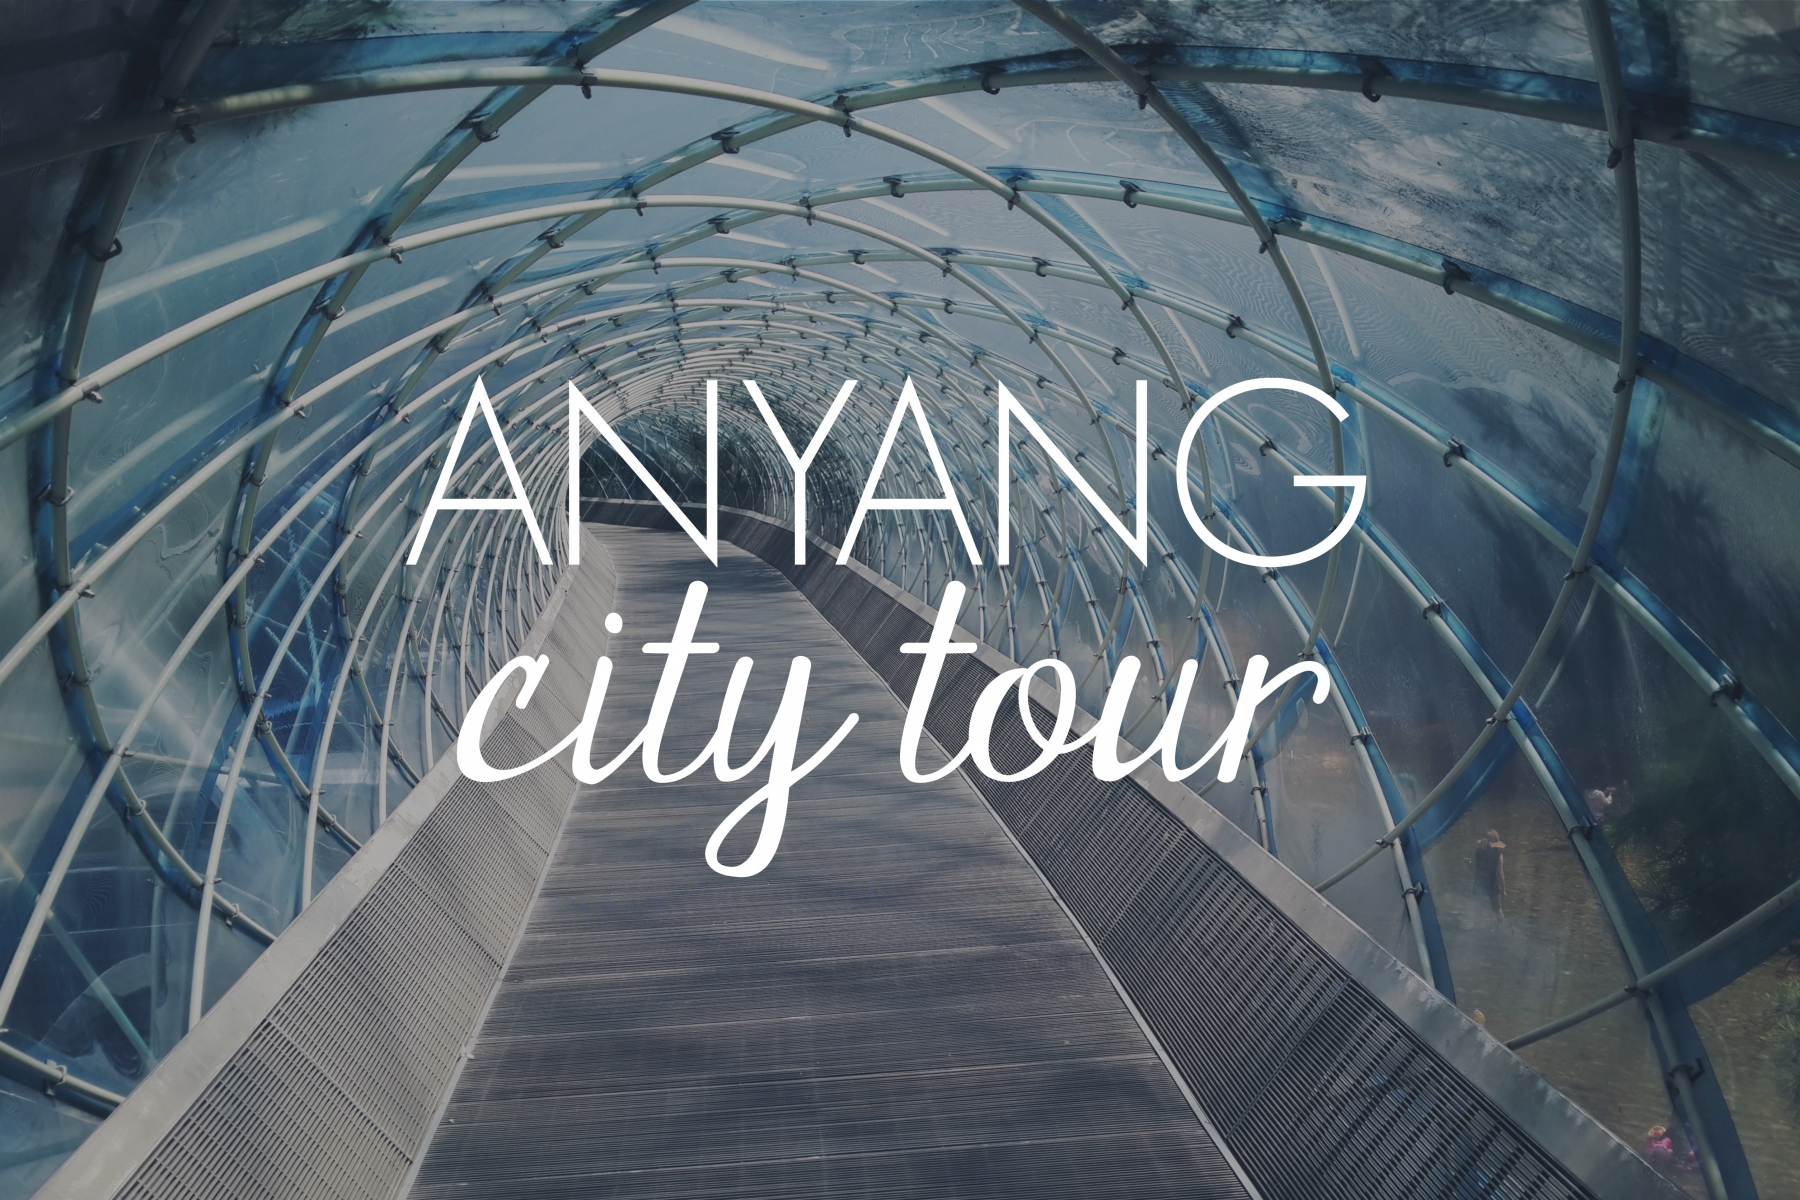 Anyang City Tour // KOREA